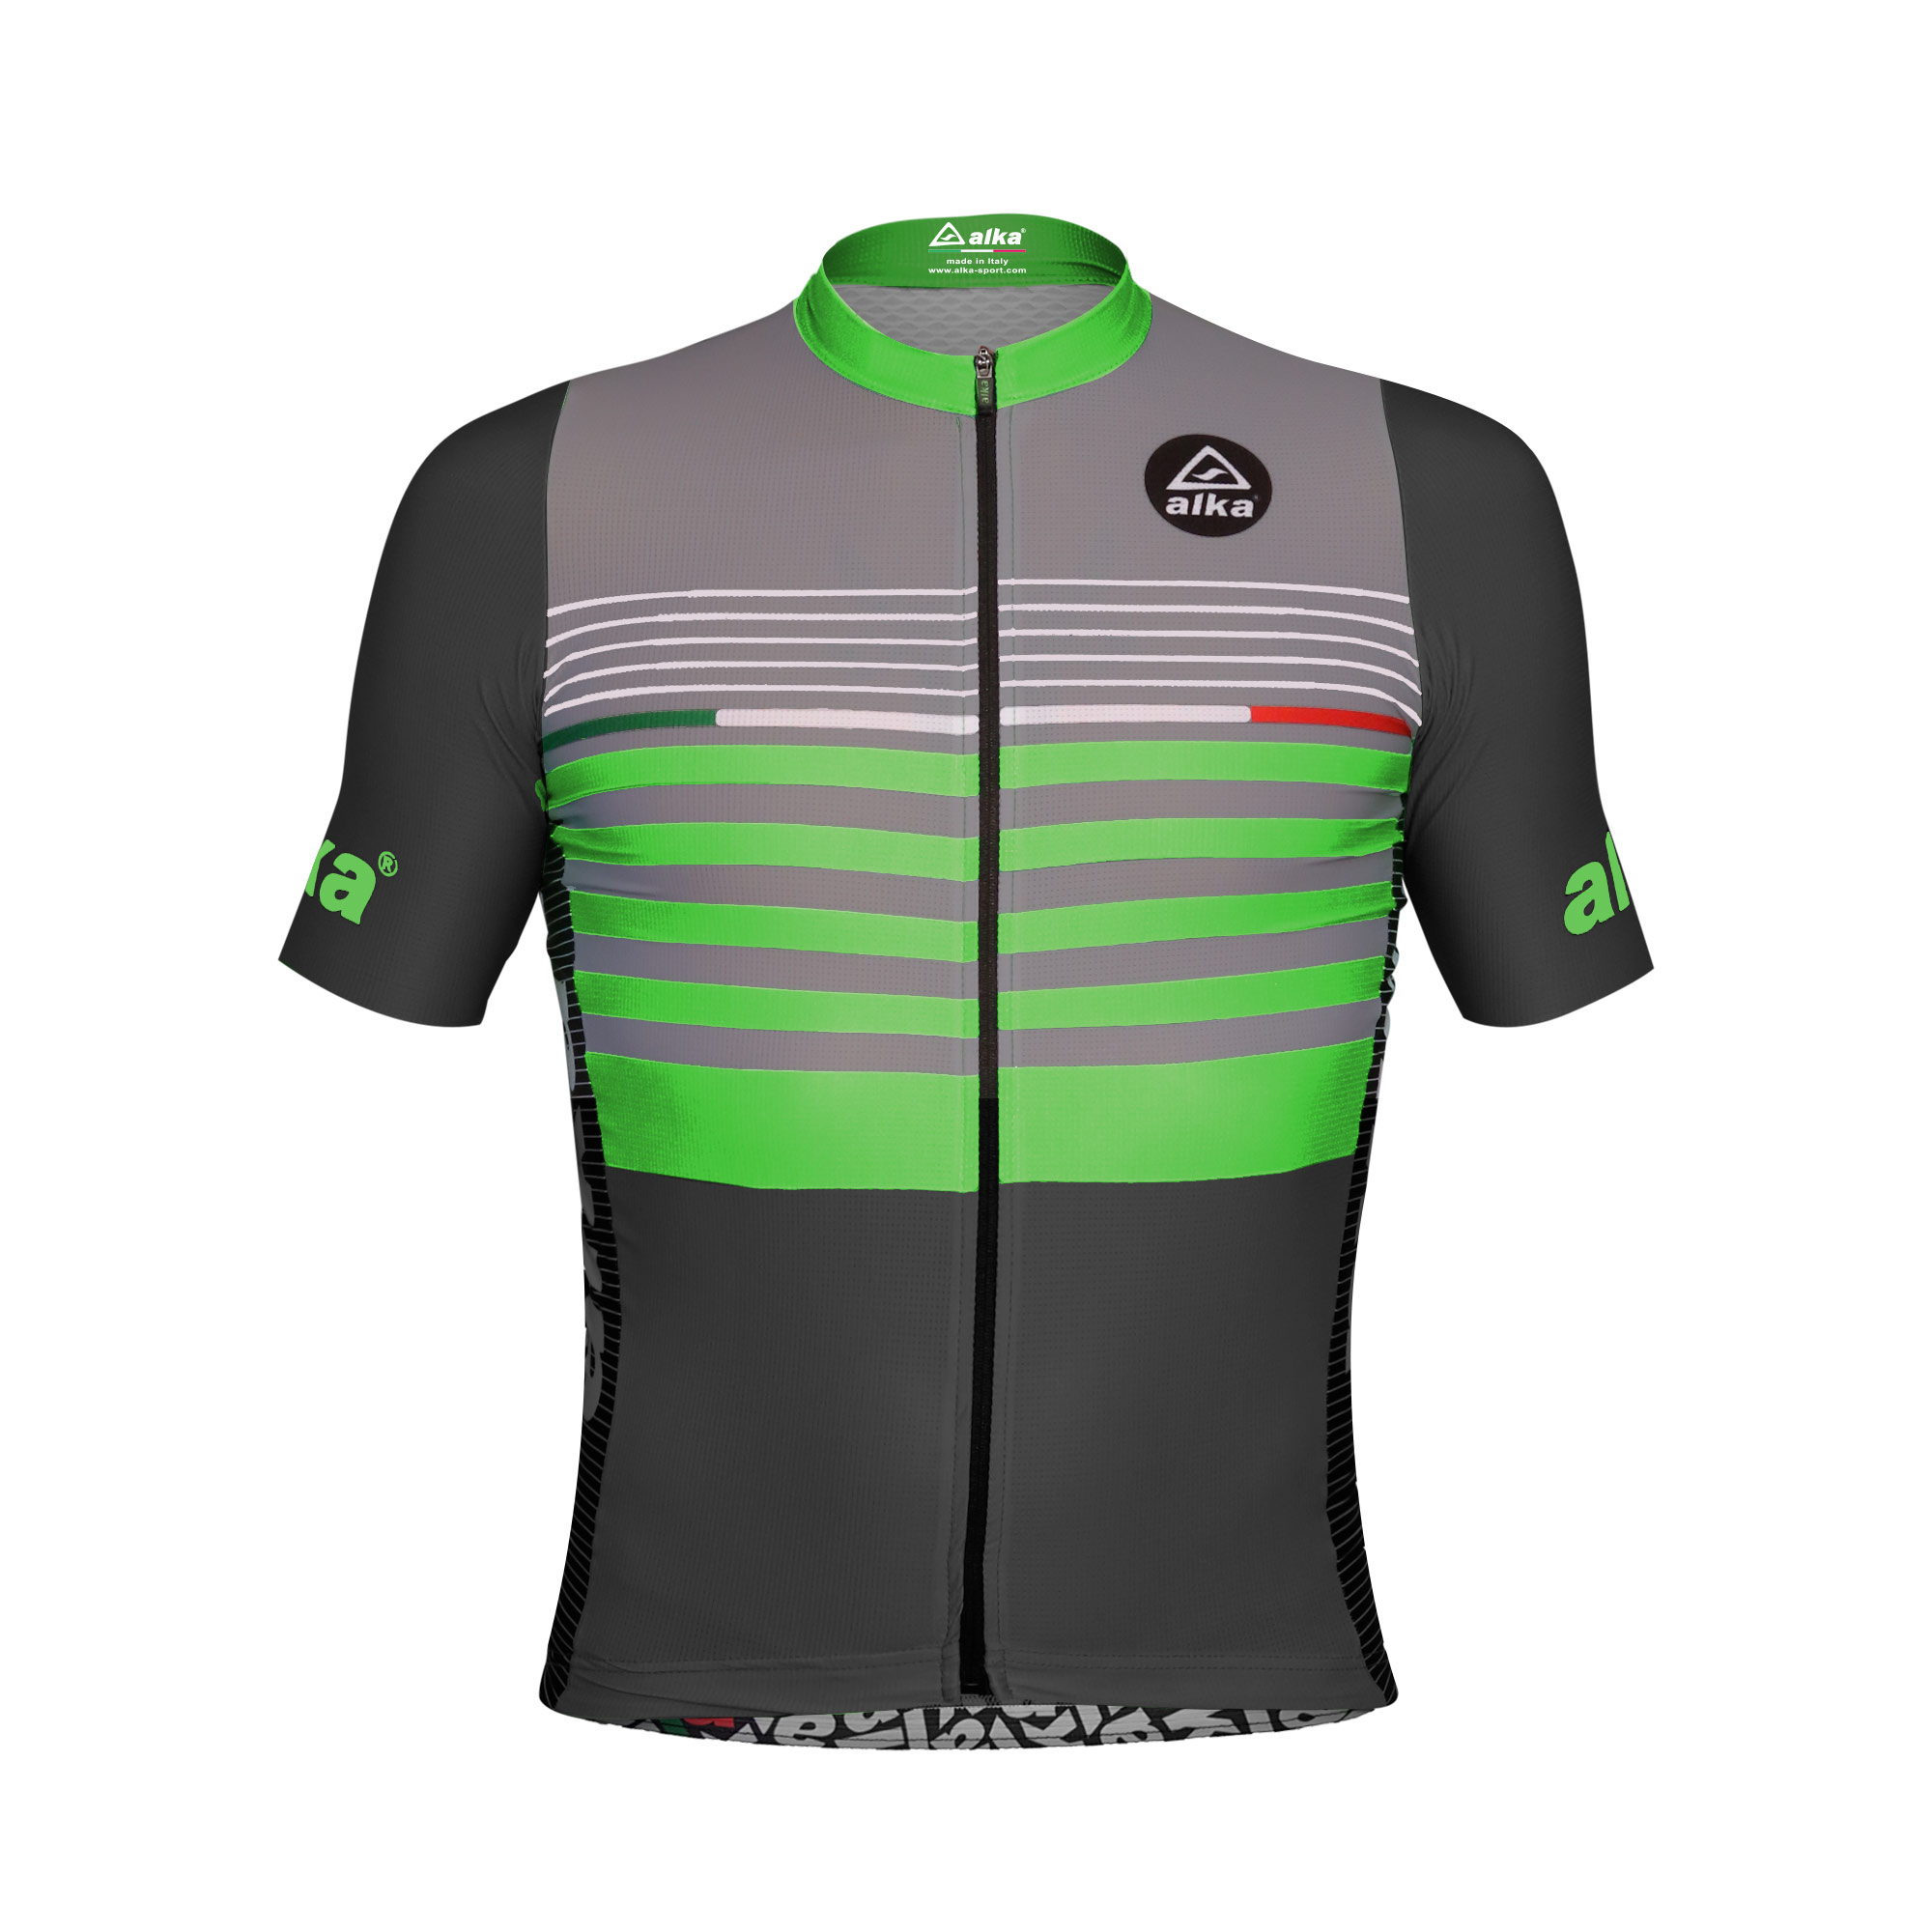 Alka Sport - Abbigliamento ciclismo personalizzato - DOPO GARA E